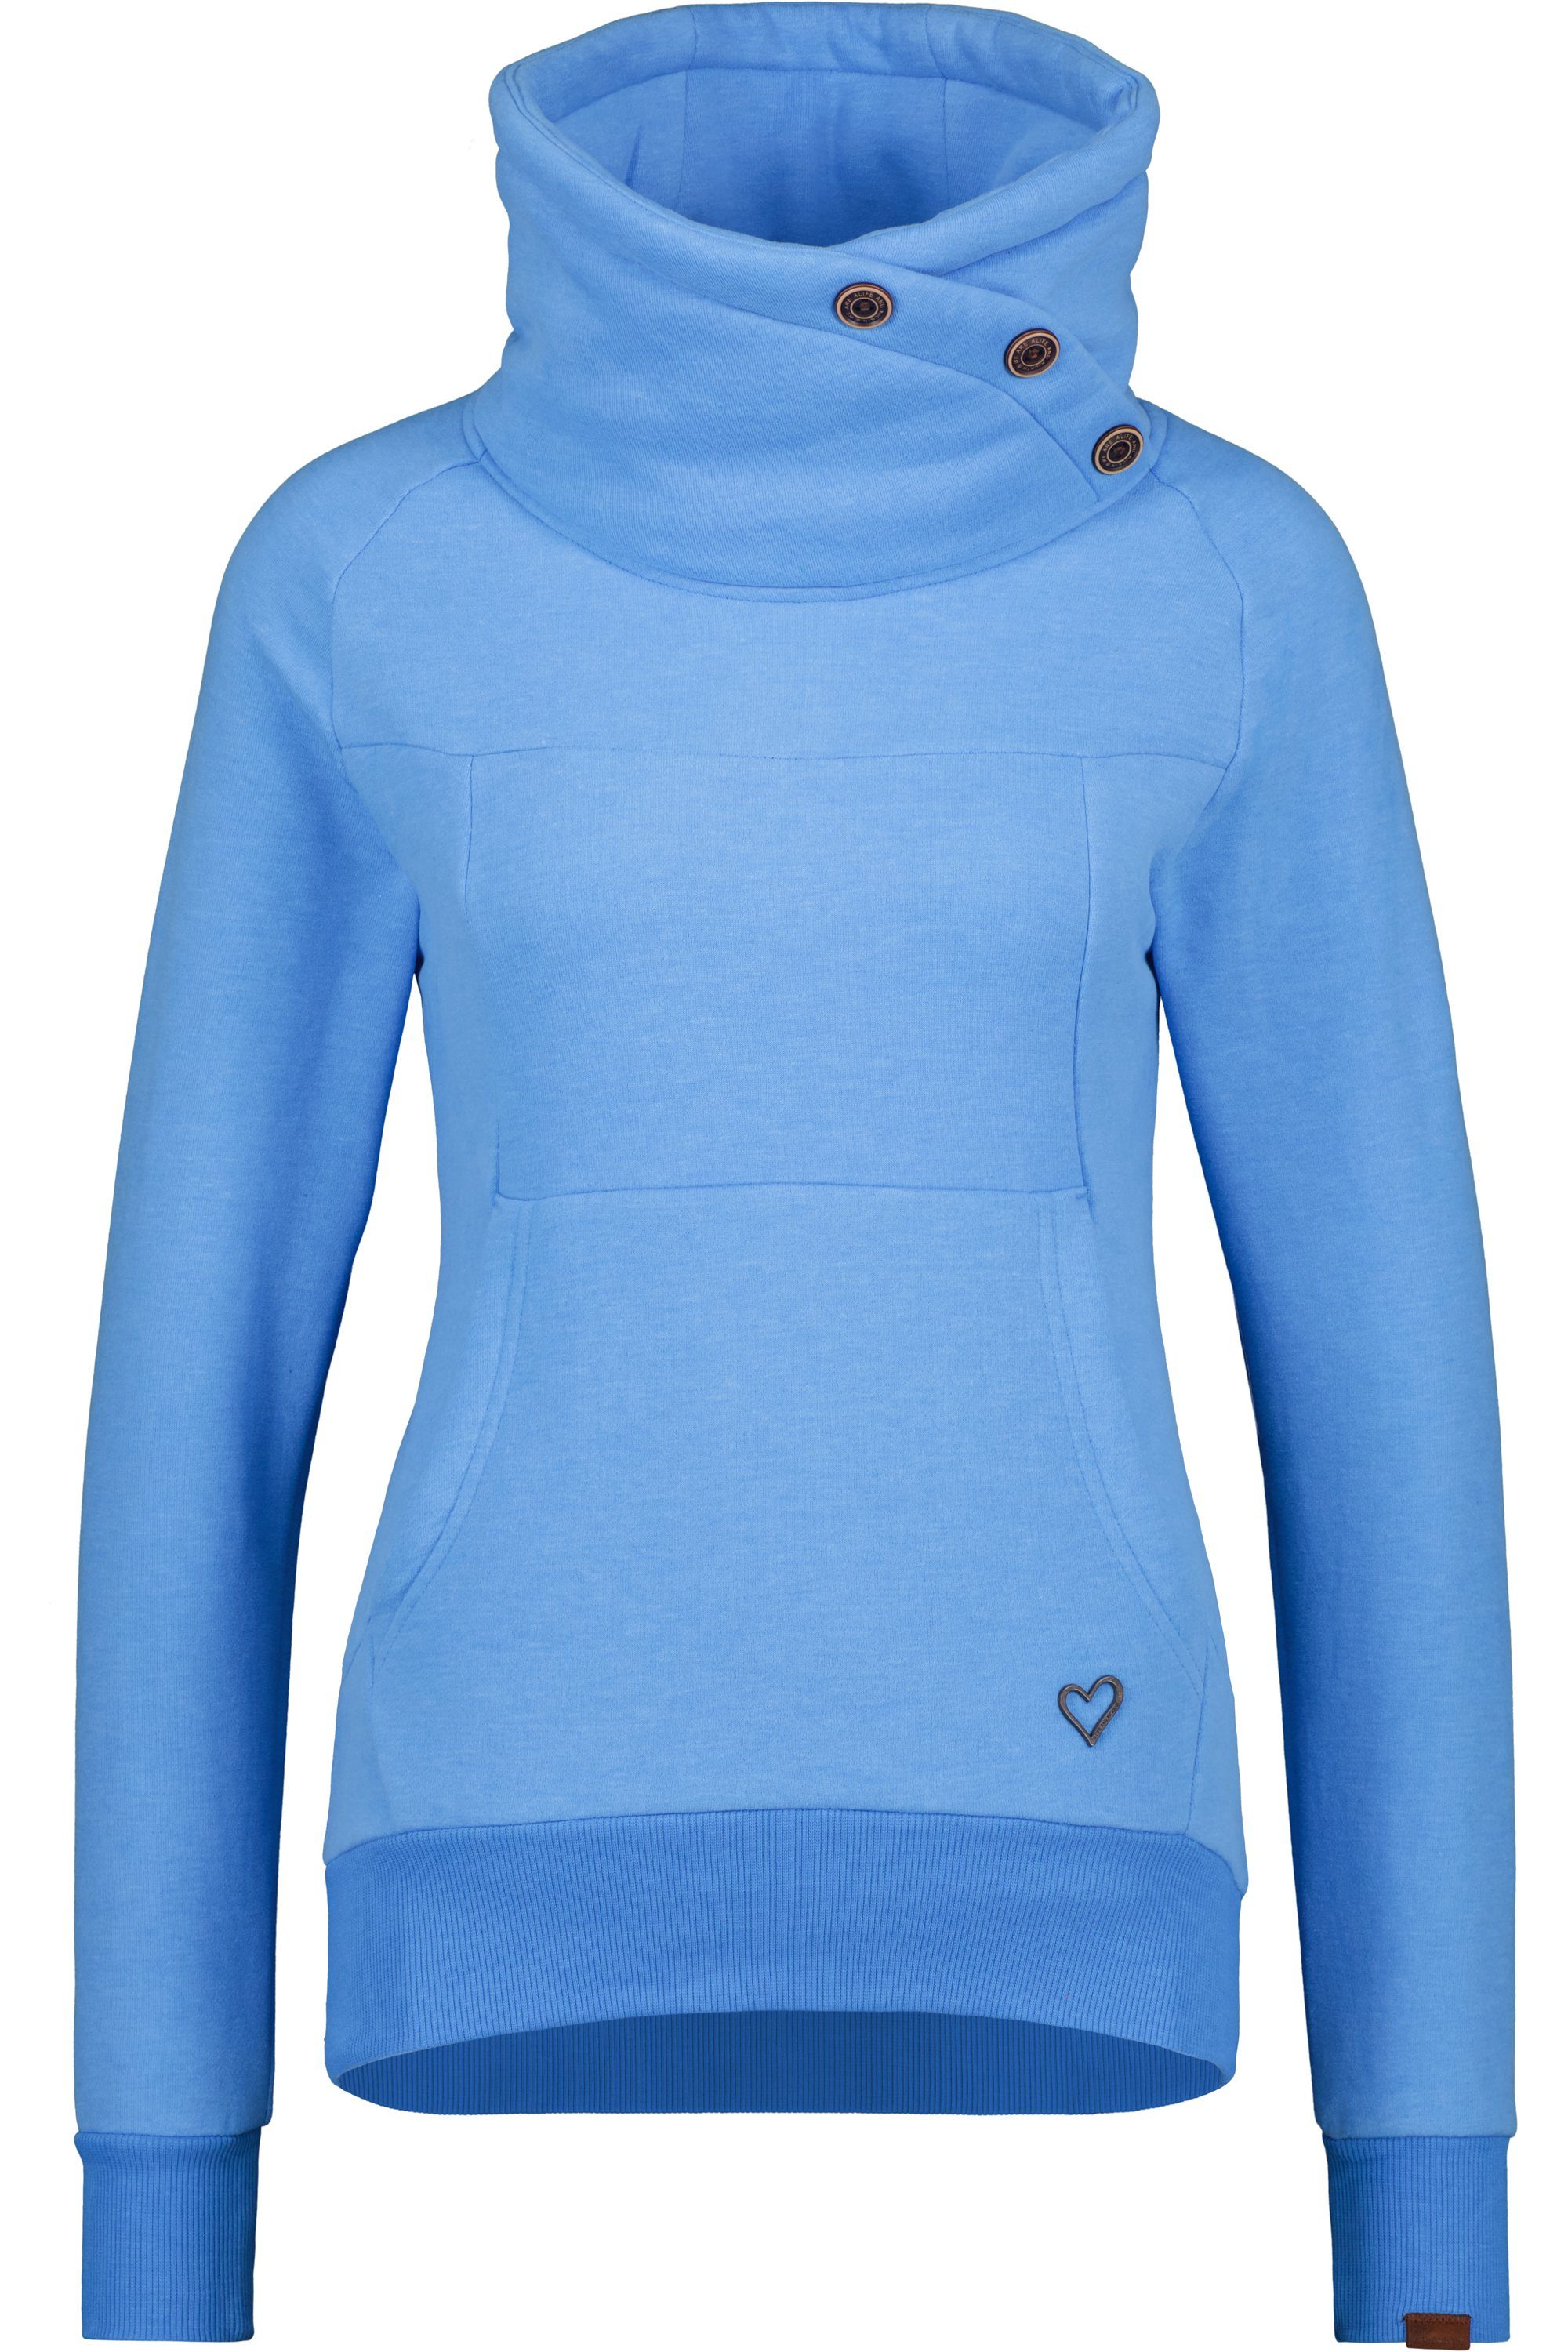 Alife & Kickin Sweatshirt VioletAK Sweatshirt Pullover azure A melange Damen Rundhalspullover